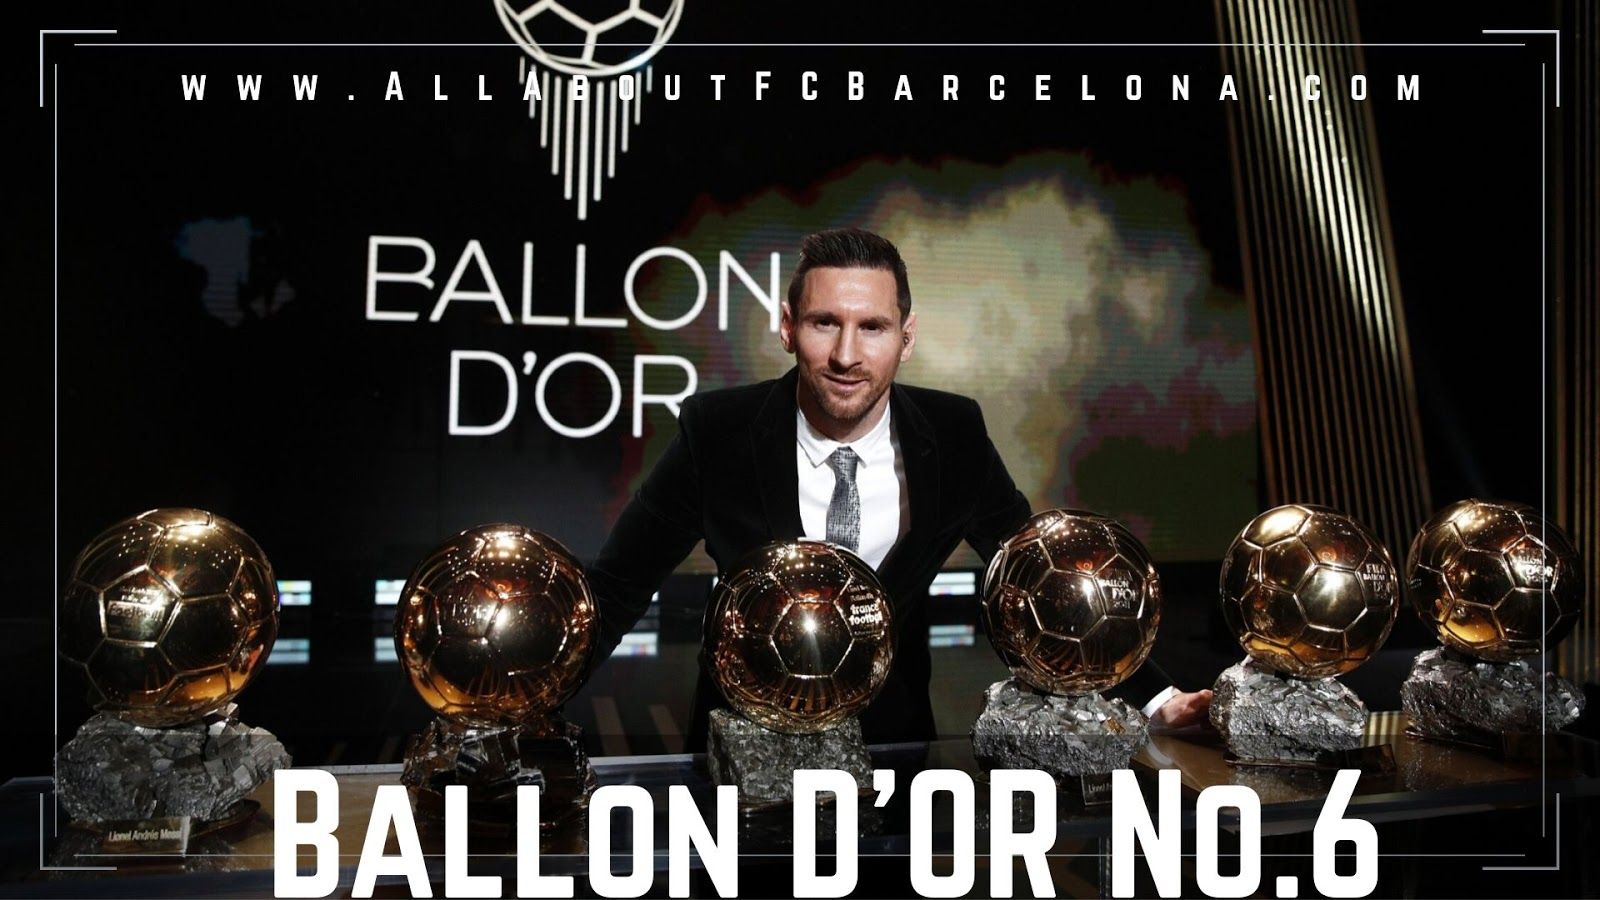 Lionel Messi wins Ballon D'Or for a .allaboutfcbarcelona.com